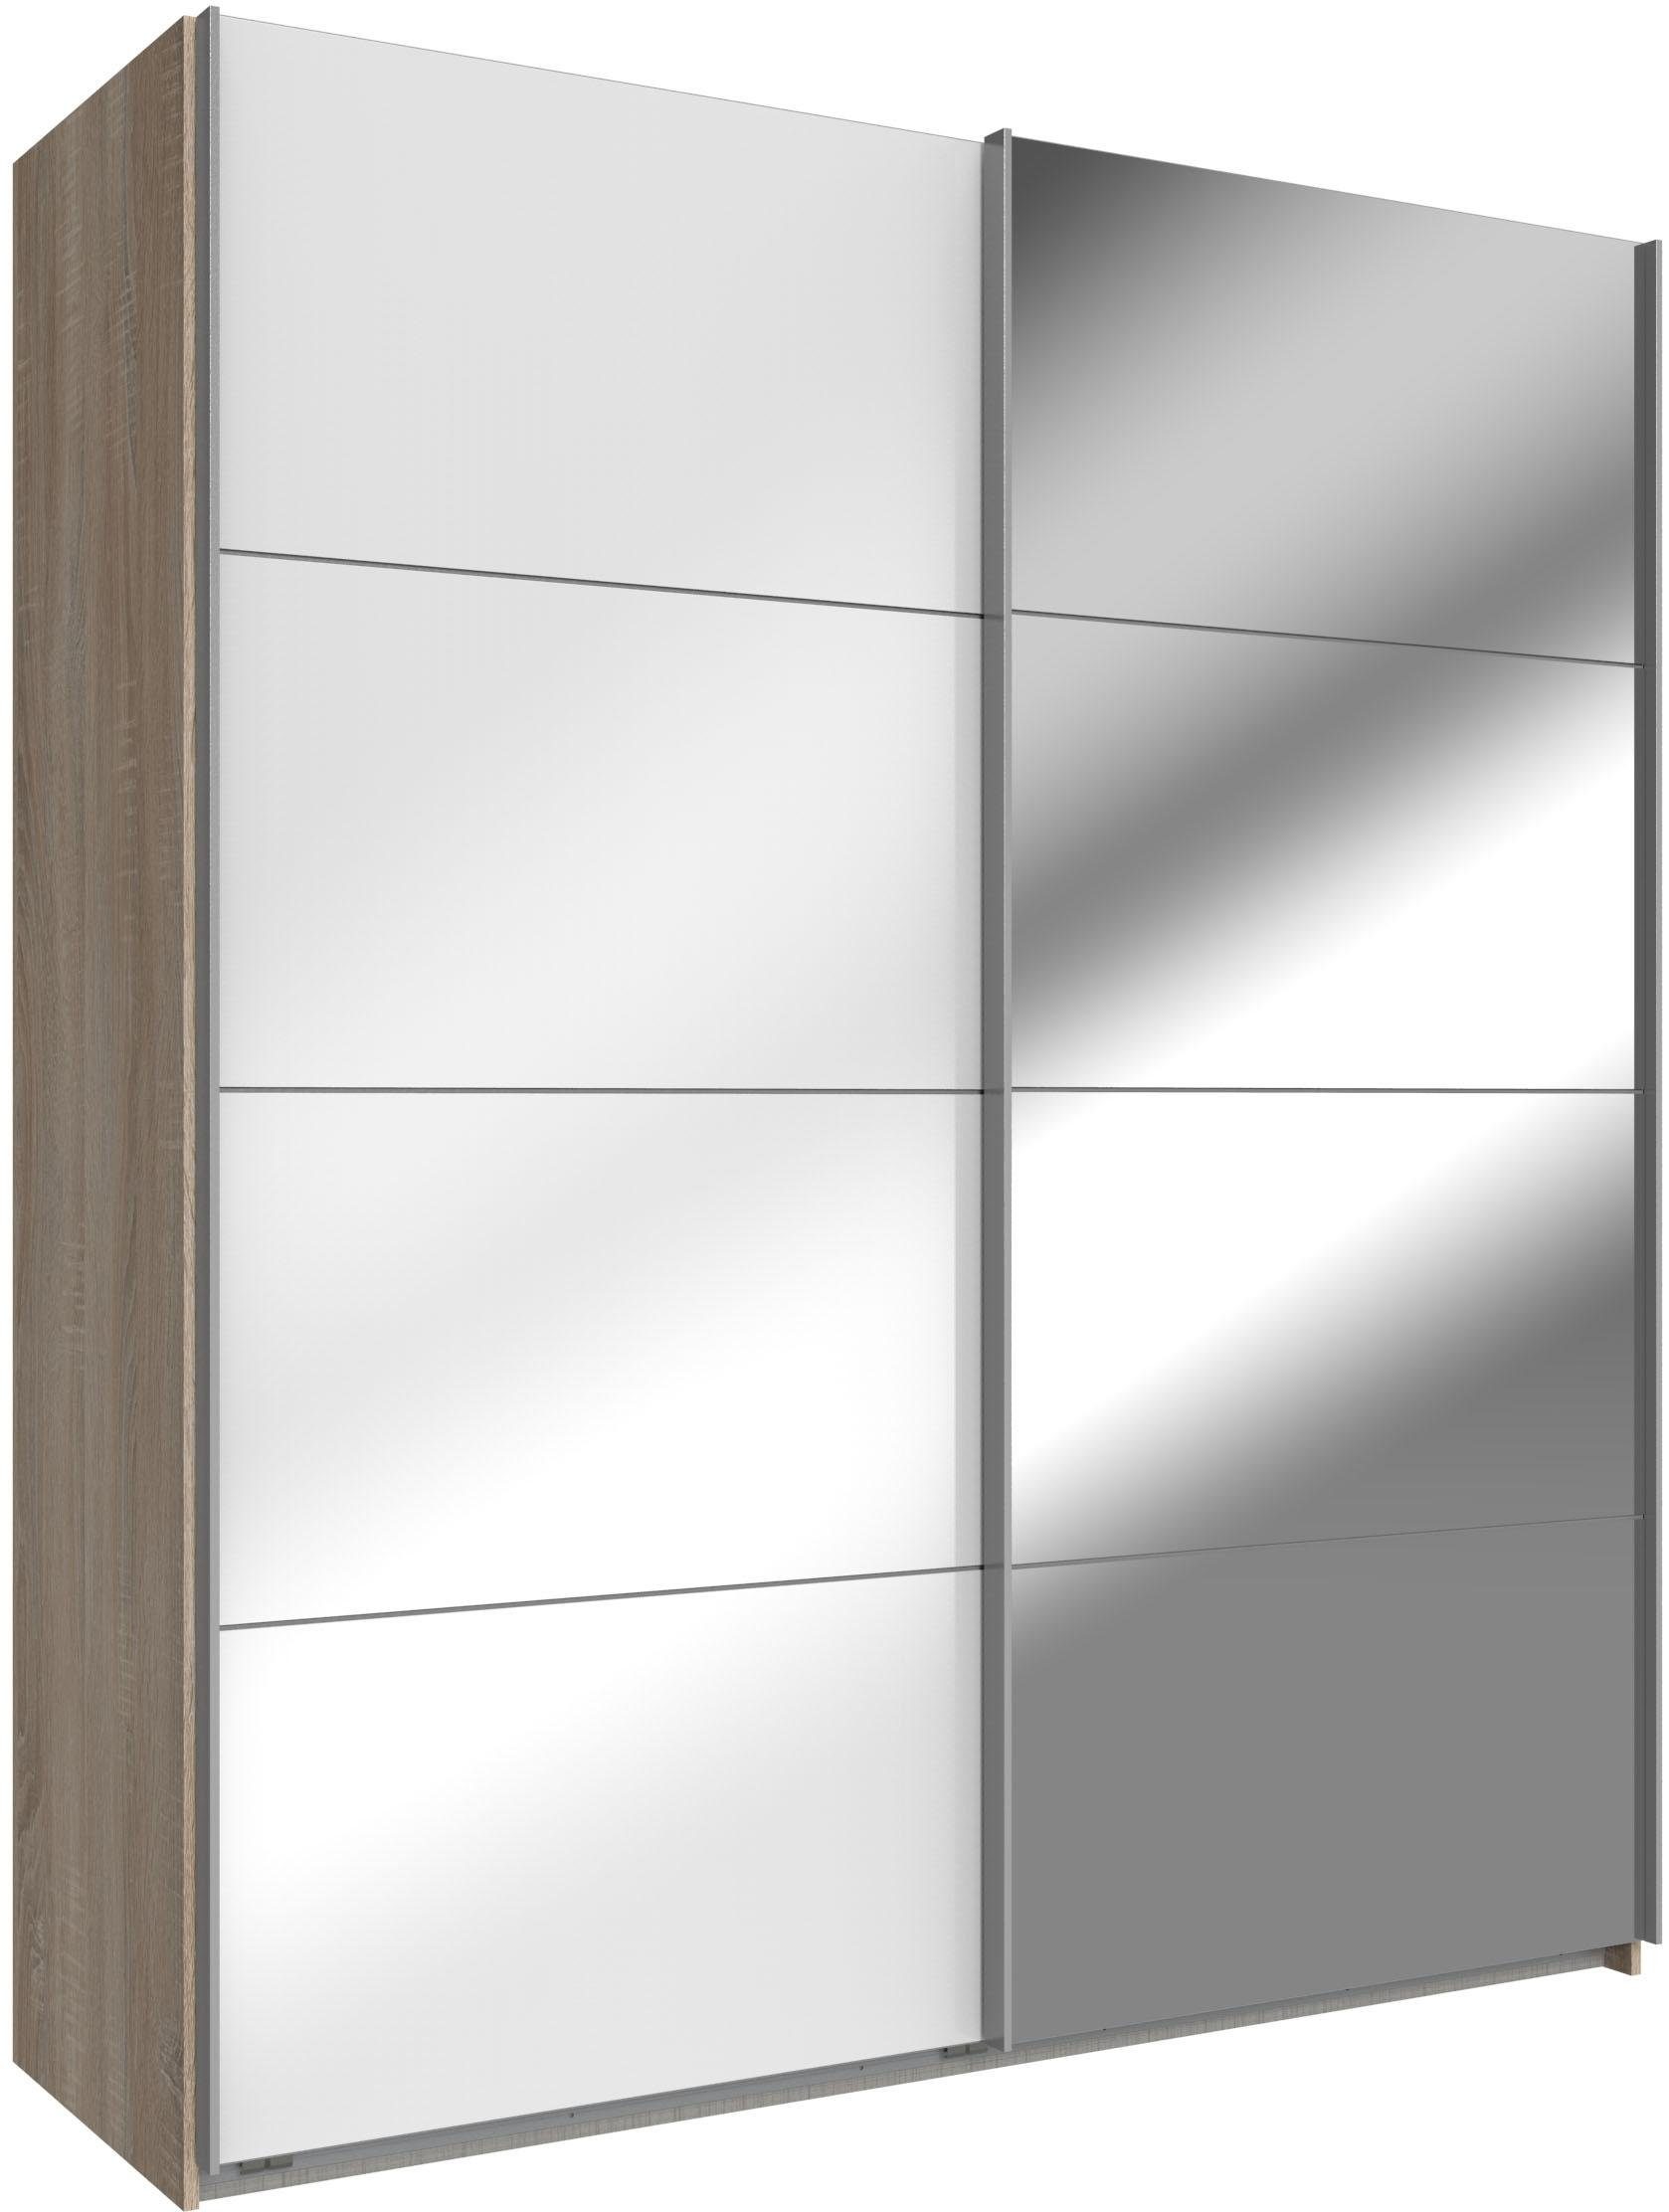 Wimex Schwebetürenschrank Easy mit Glas und Spiegel struktureichefarben hell, Weißglas/Spiegel